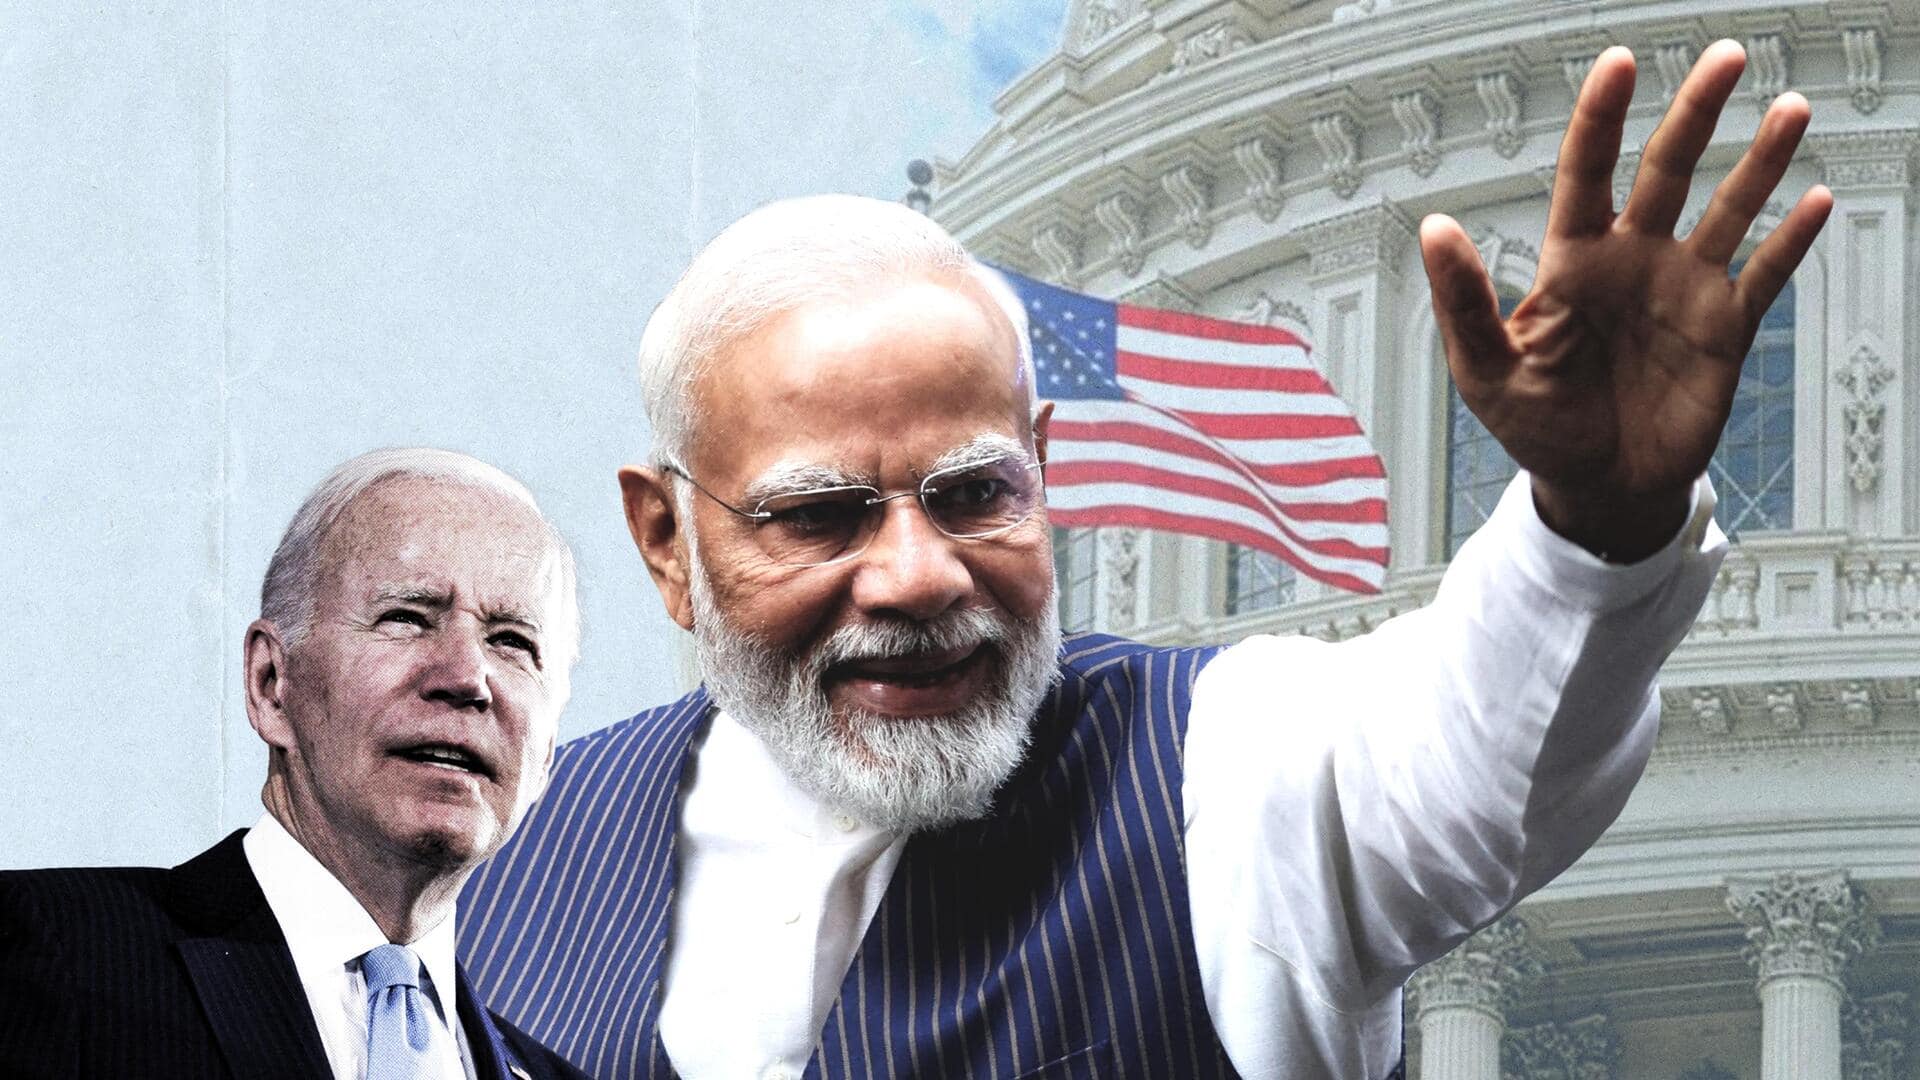 प्रधानमंत्री मोदी ने ऐतिहासिक दूसरी बार अमेरिकी संसद को संबोधित किया, बोले- भारत लोकतंत्र की जननी